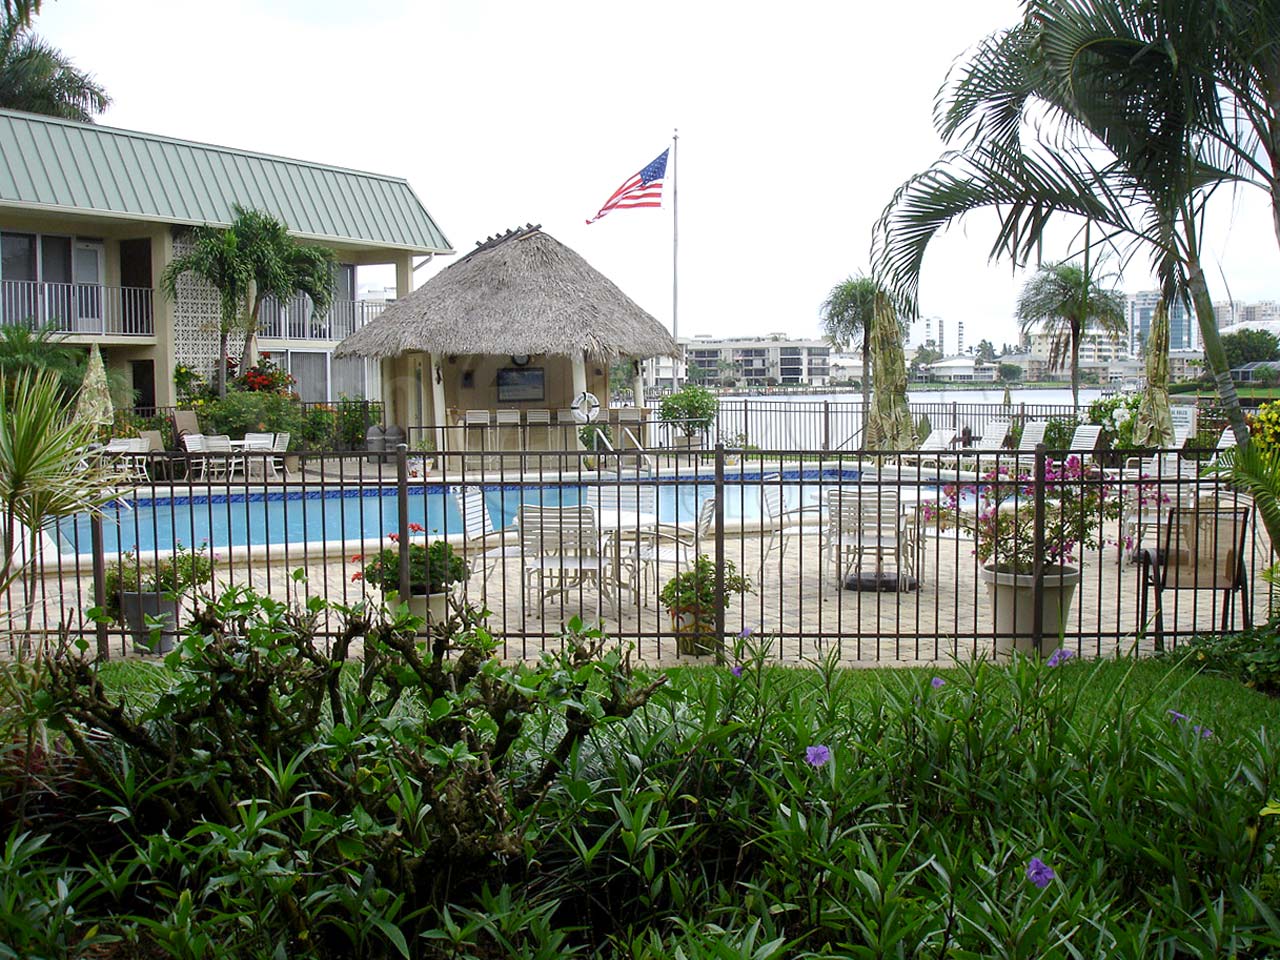 Leeward Cove Community Pool and Cabana